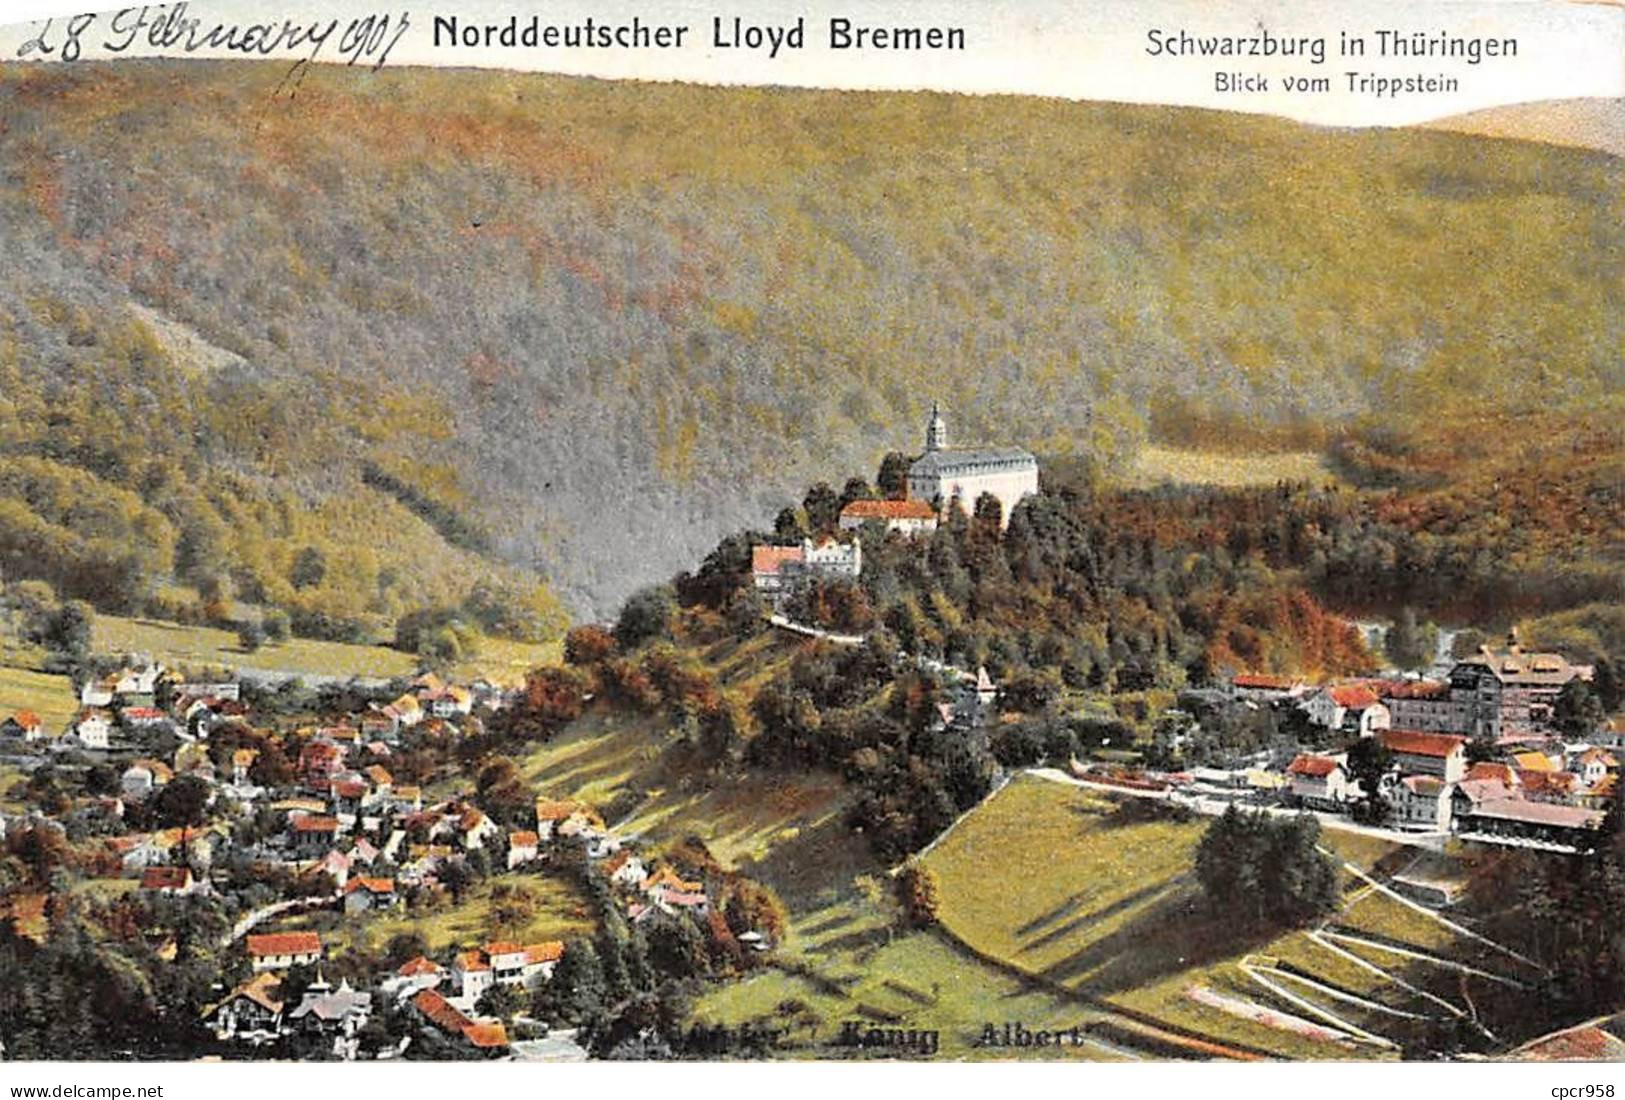 ALLEMAGNE - BREMEN - SAN26467 - Norddeutscher Lloyd Bremen - Schwarzburg In Thüringen - Bremen